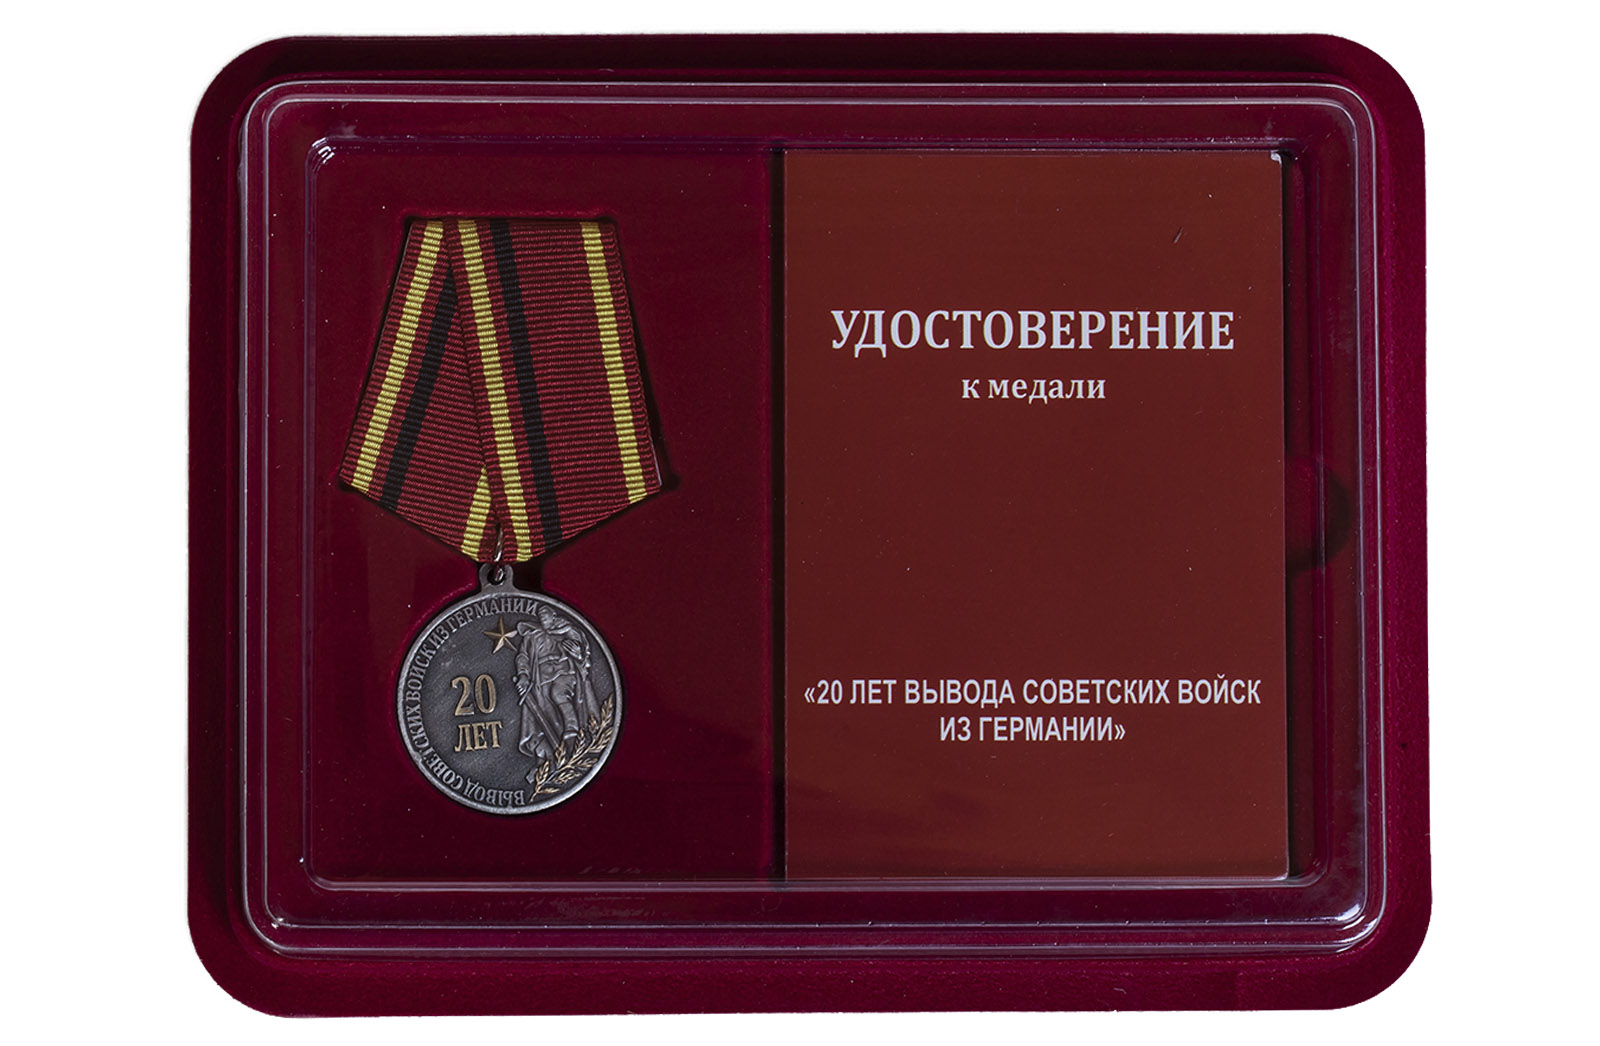 Купить медаль 20 лет Вывода советских войск из Германии в подарок выгодно